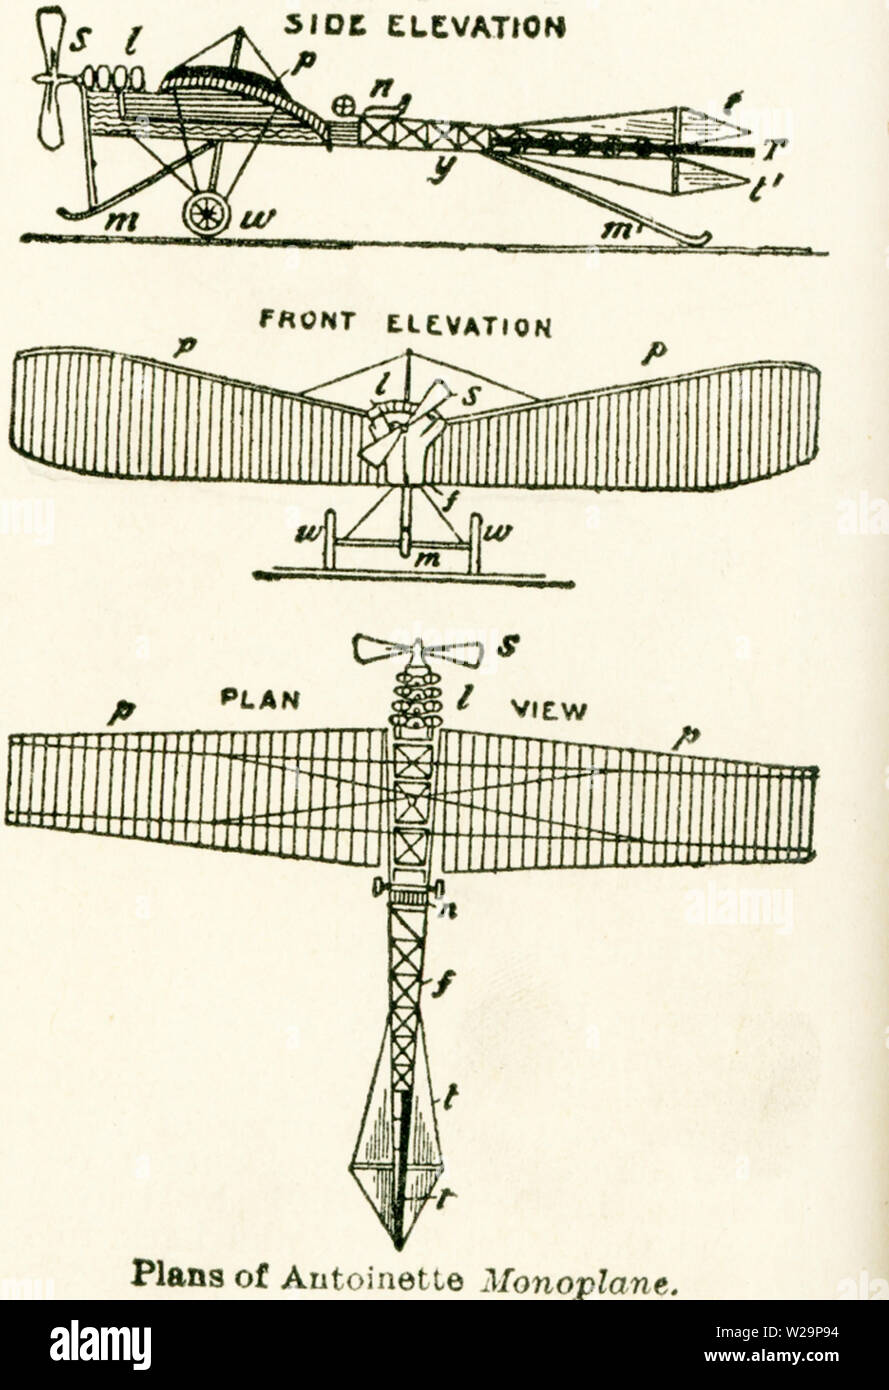 Dieses Diagramm der Pläne der Antoinette monoplan Datum bis in die frühen 1920er Jahre. In den ersten Jahren der fliegenden Maschinen gab es zwei Arten: Die doppeldecker, die aus zwei fest verbunden sind Ebenen (der Typ des Wright borthers"-Maschine) und die eindecker oder einzelne Segelfliegen Ebene, die von Jean Bleriot verwendet wurde über den Englischen Kanal 1909 zu fliegen war. Die ersten Eindecker Flug war im Jahre 1911. Es war in Frankreich gebaut und war ein militärisches Flugzeug. Dargestellt sind hier die Seitenansicht, die vordere Elevation, und Draufsicht (Blick auf die Maschine von oben). Stockfoto